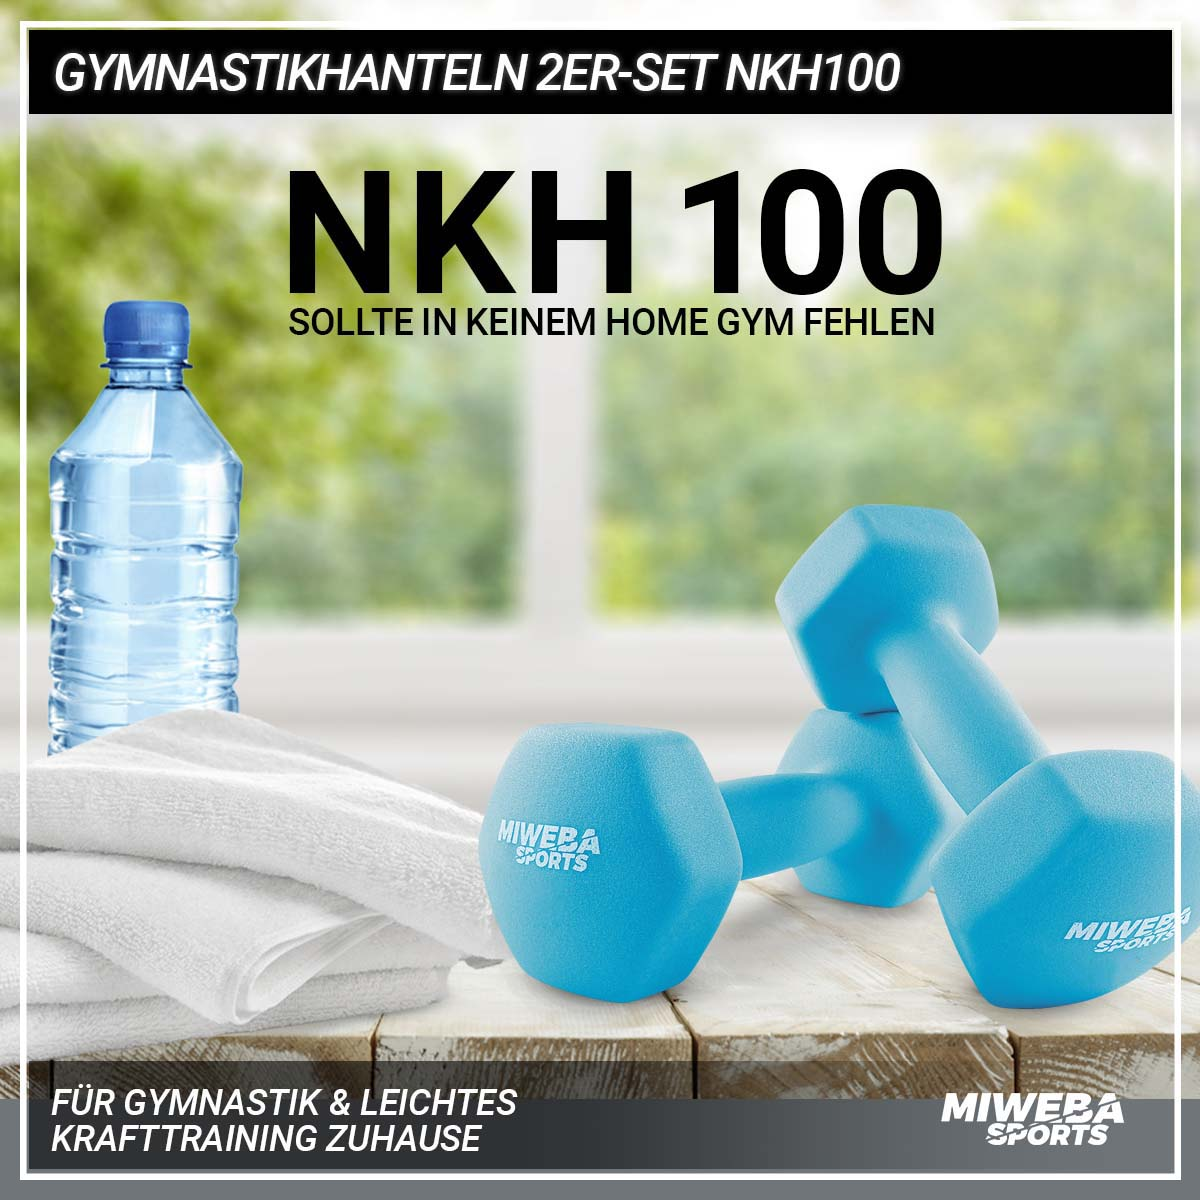 MIWEBA Türkis 2er NKH100 Set SPORTS Gymnastikhanteln Kurzhantel,